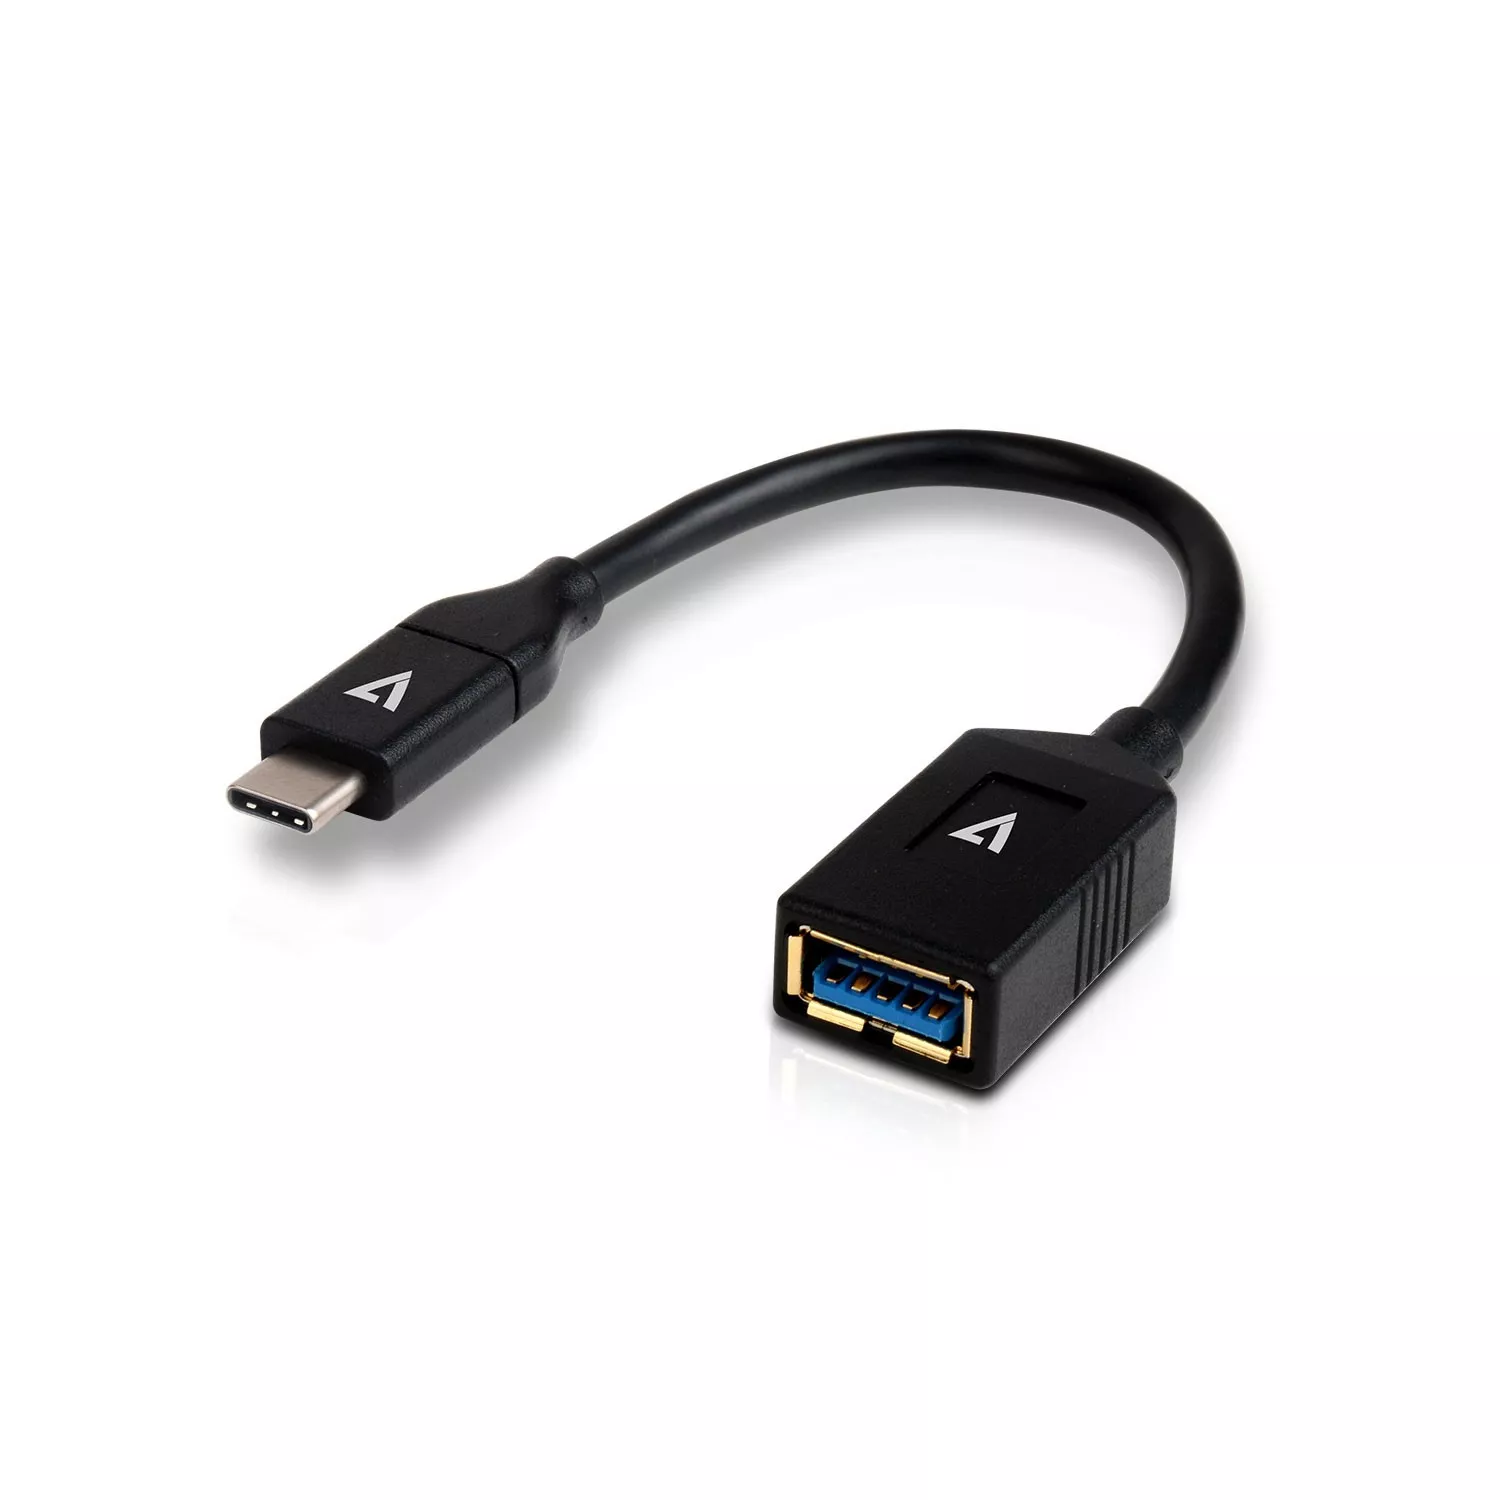 Achat V7 Câble USB 3.0 A femelle vers USB-C mâle, noir 0.3m 1ft au meilleur prix